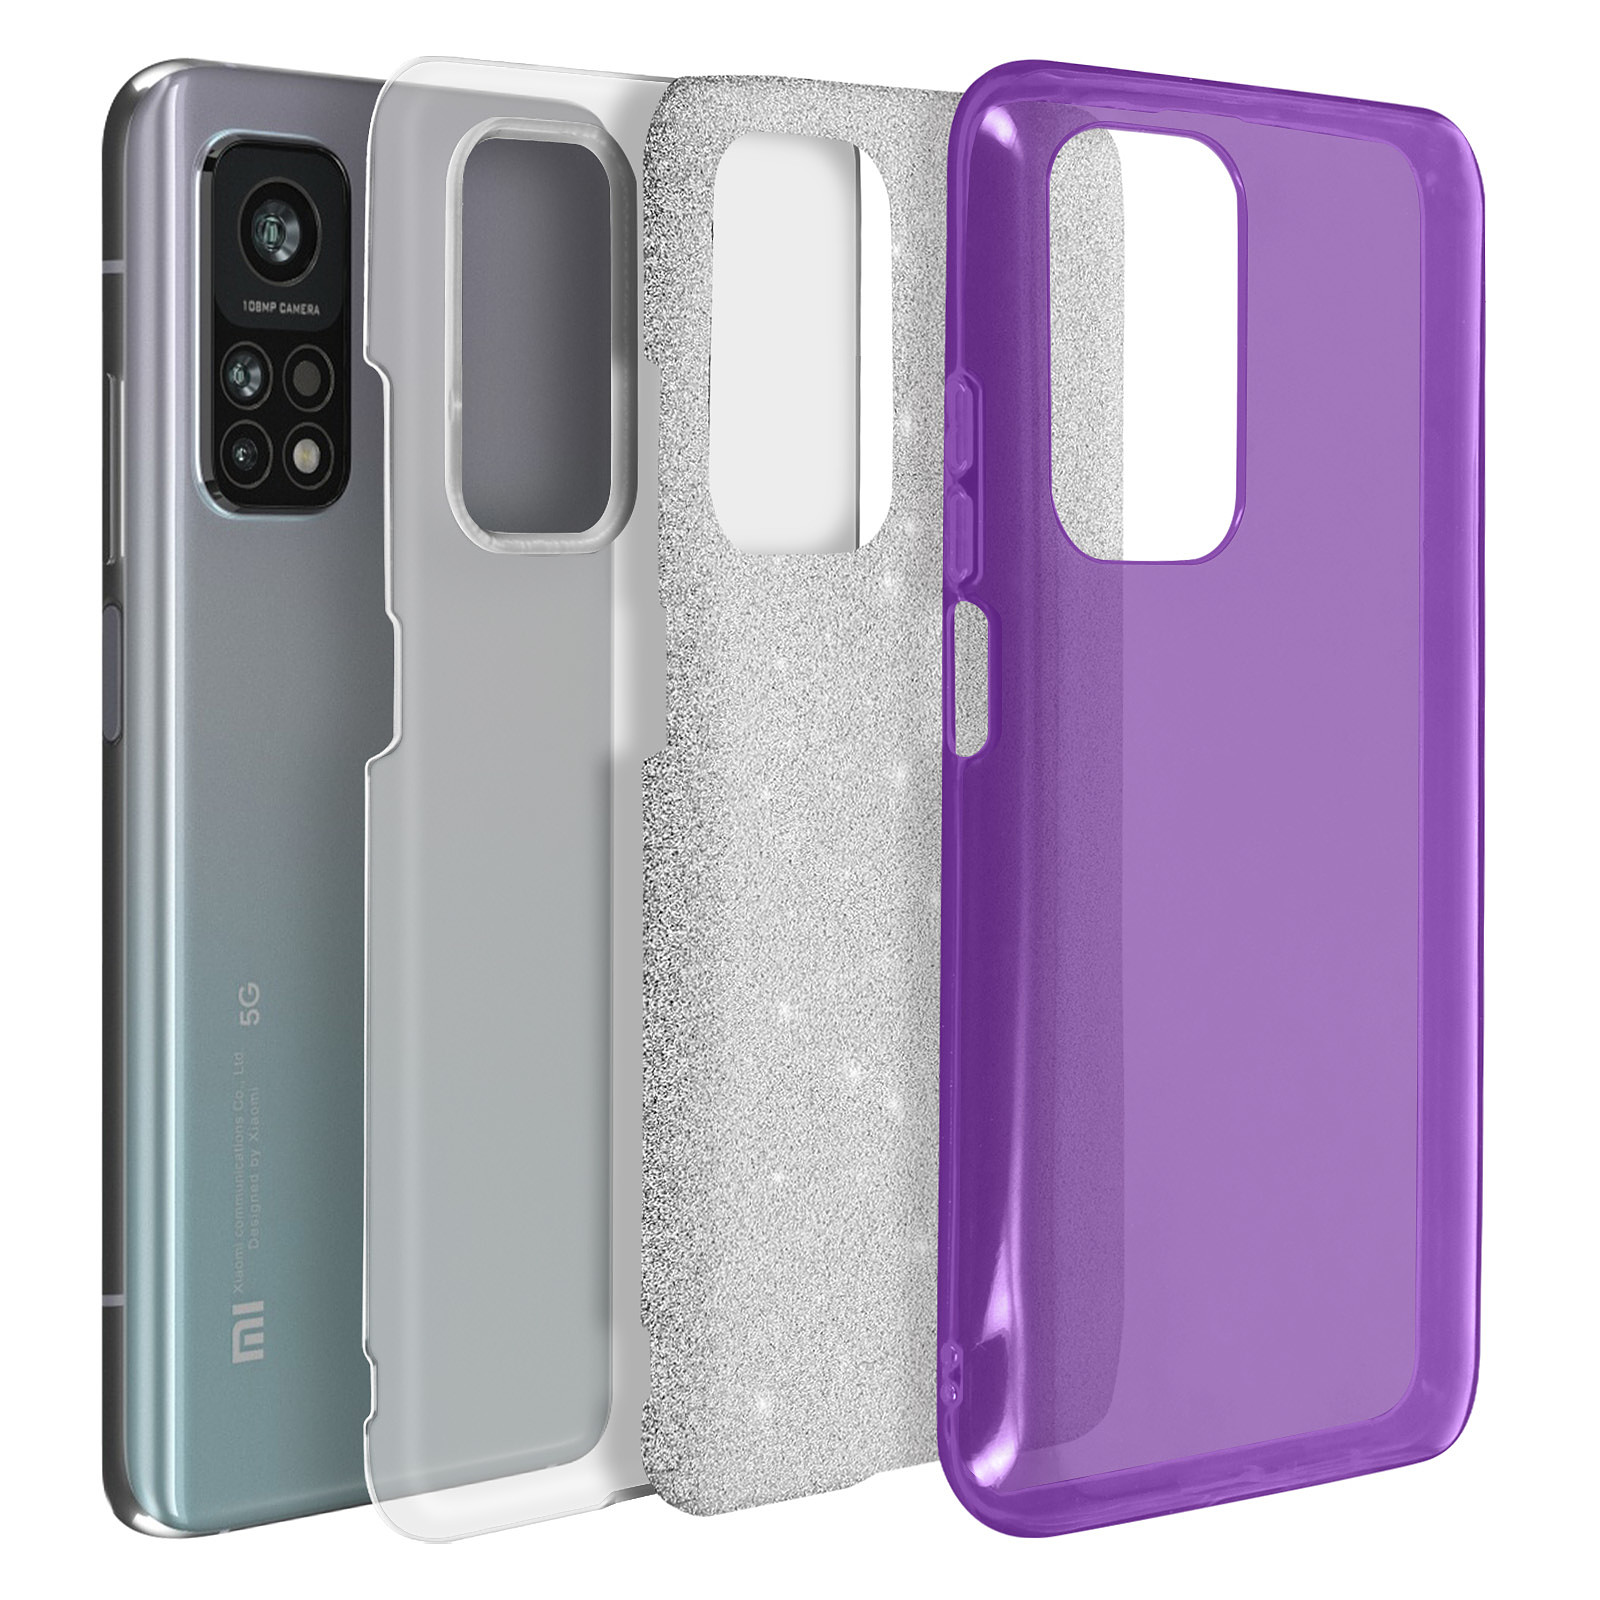 Avizar Coque pour Xiaomi Mi 10T / Mi 10T Pro Design Paillette Amovible Silicone violet - Coque telephone Avizar